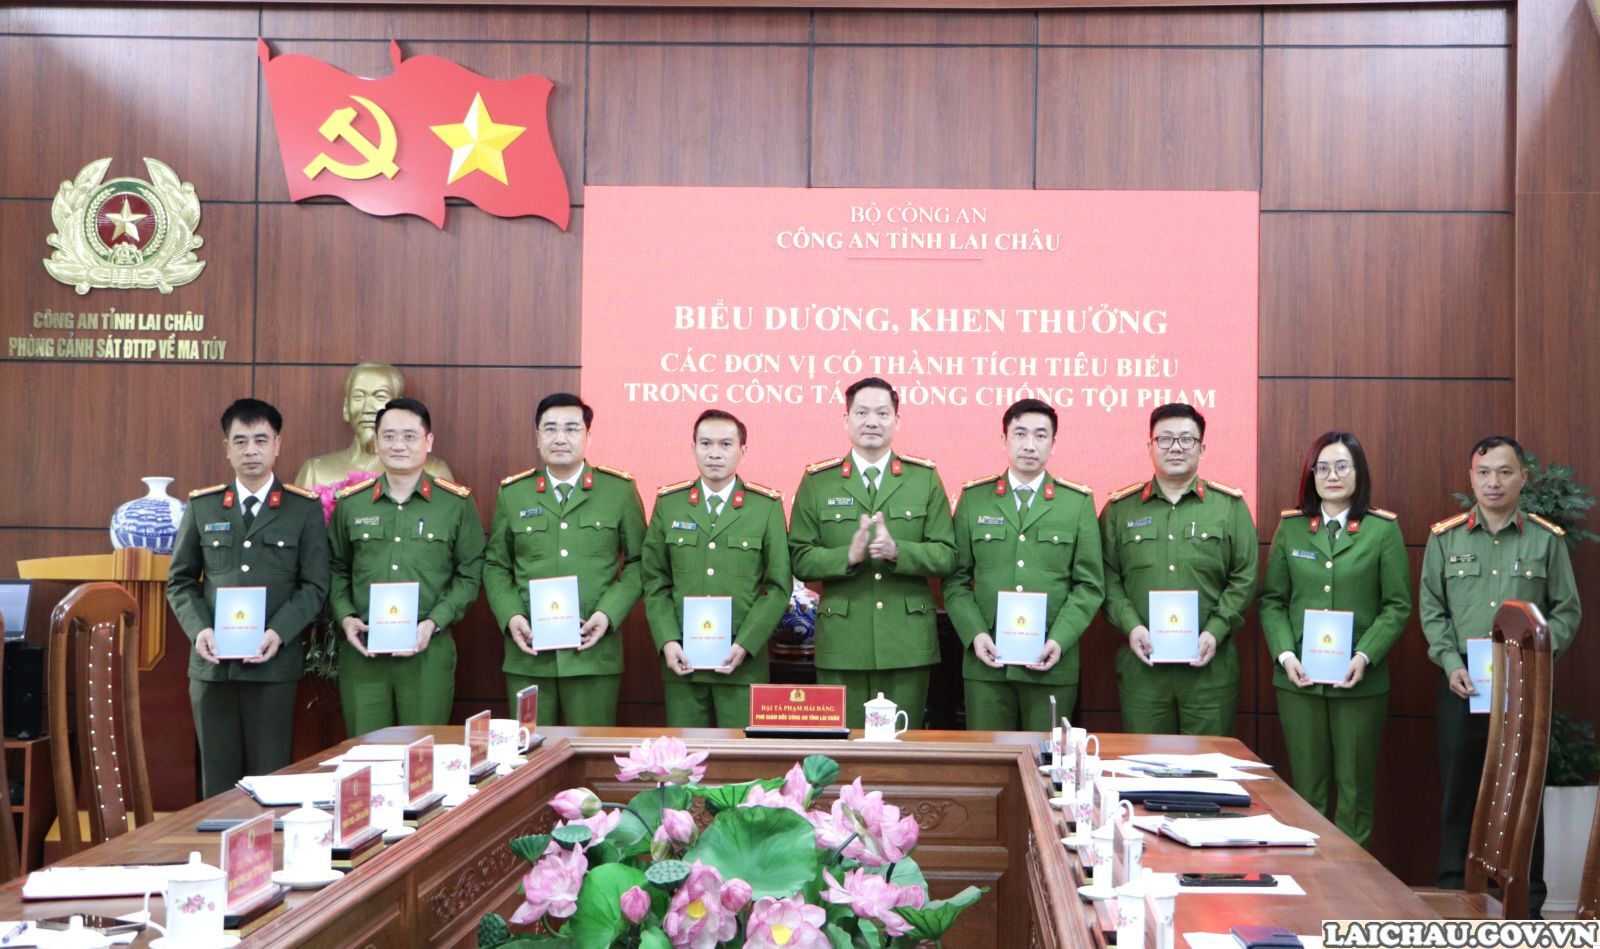 Công an tỉnh Lai Châu: Biểu dương, khen thưởng các đơn vị có thành tích tiêu biểu trong công tác phòng chống tội phạm